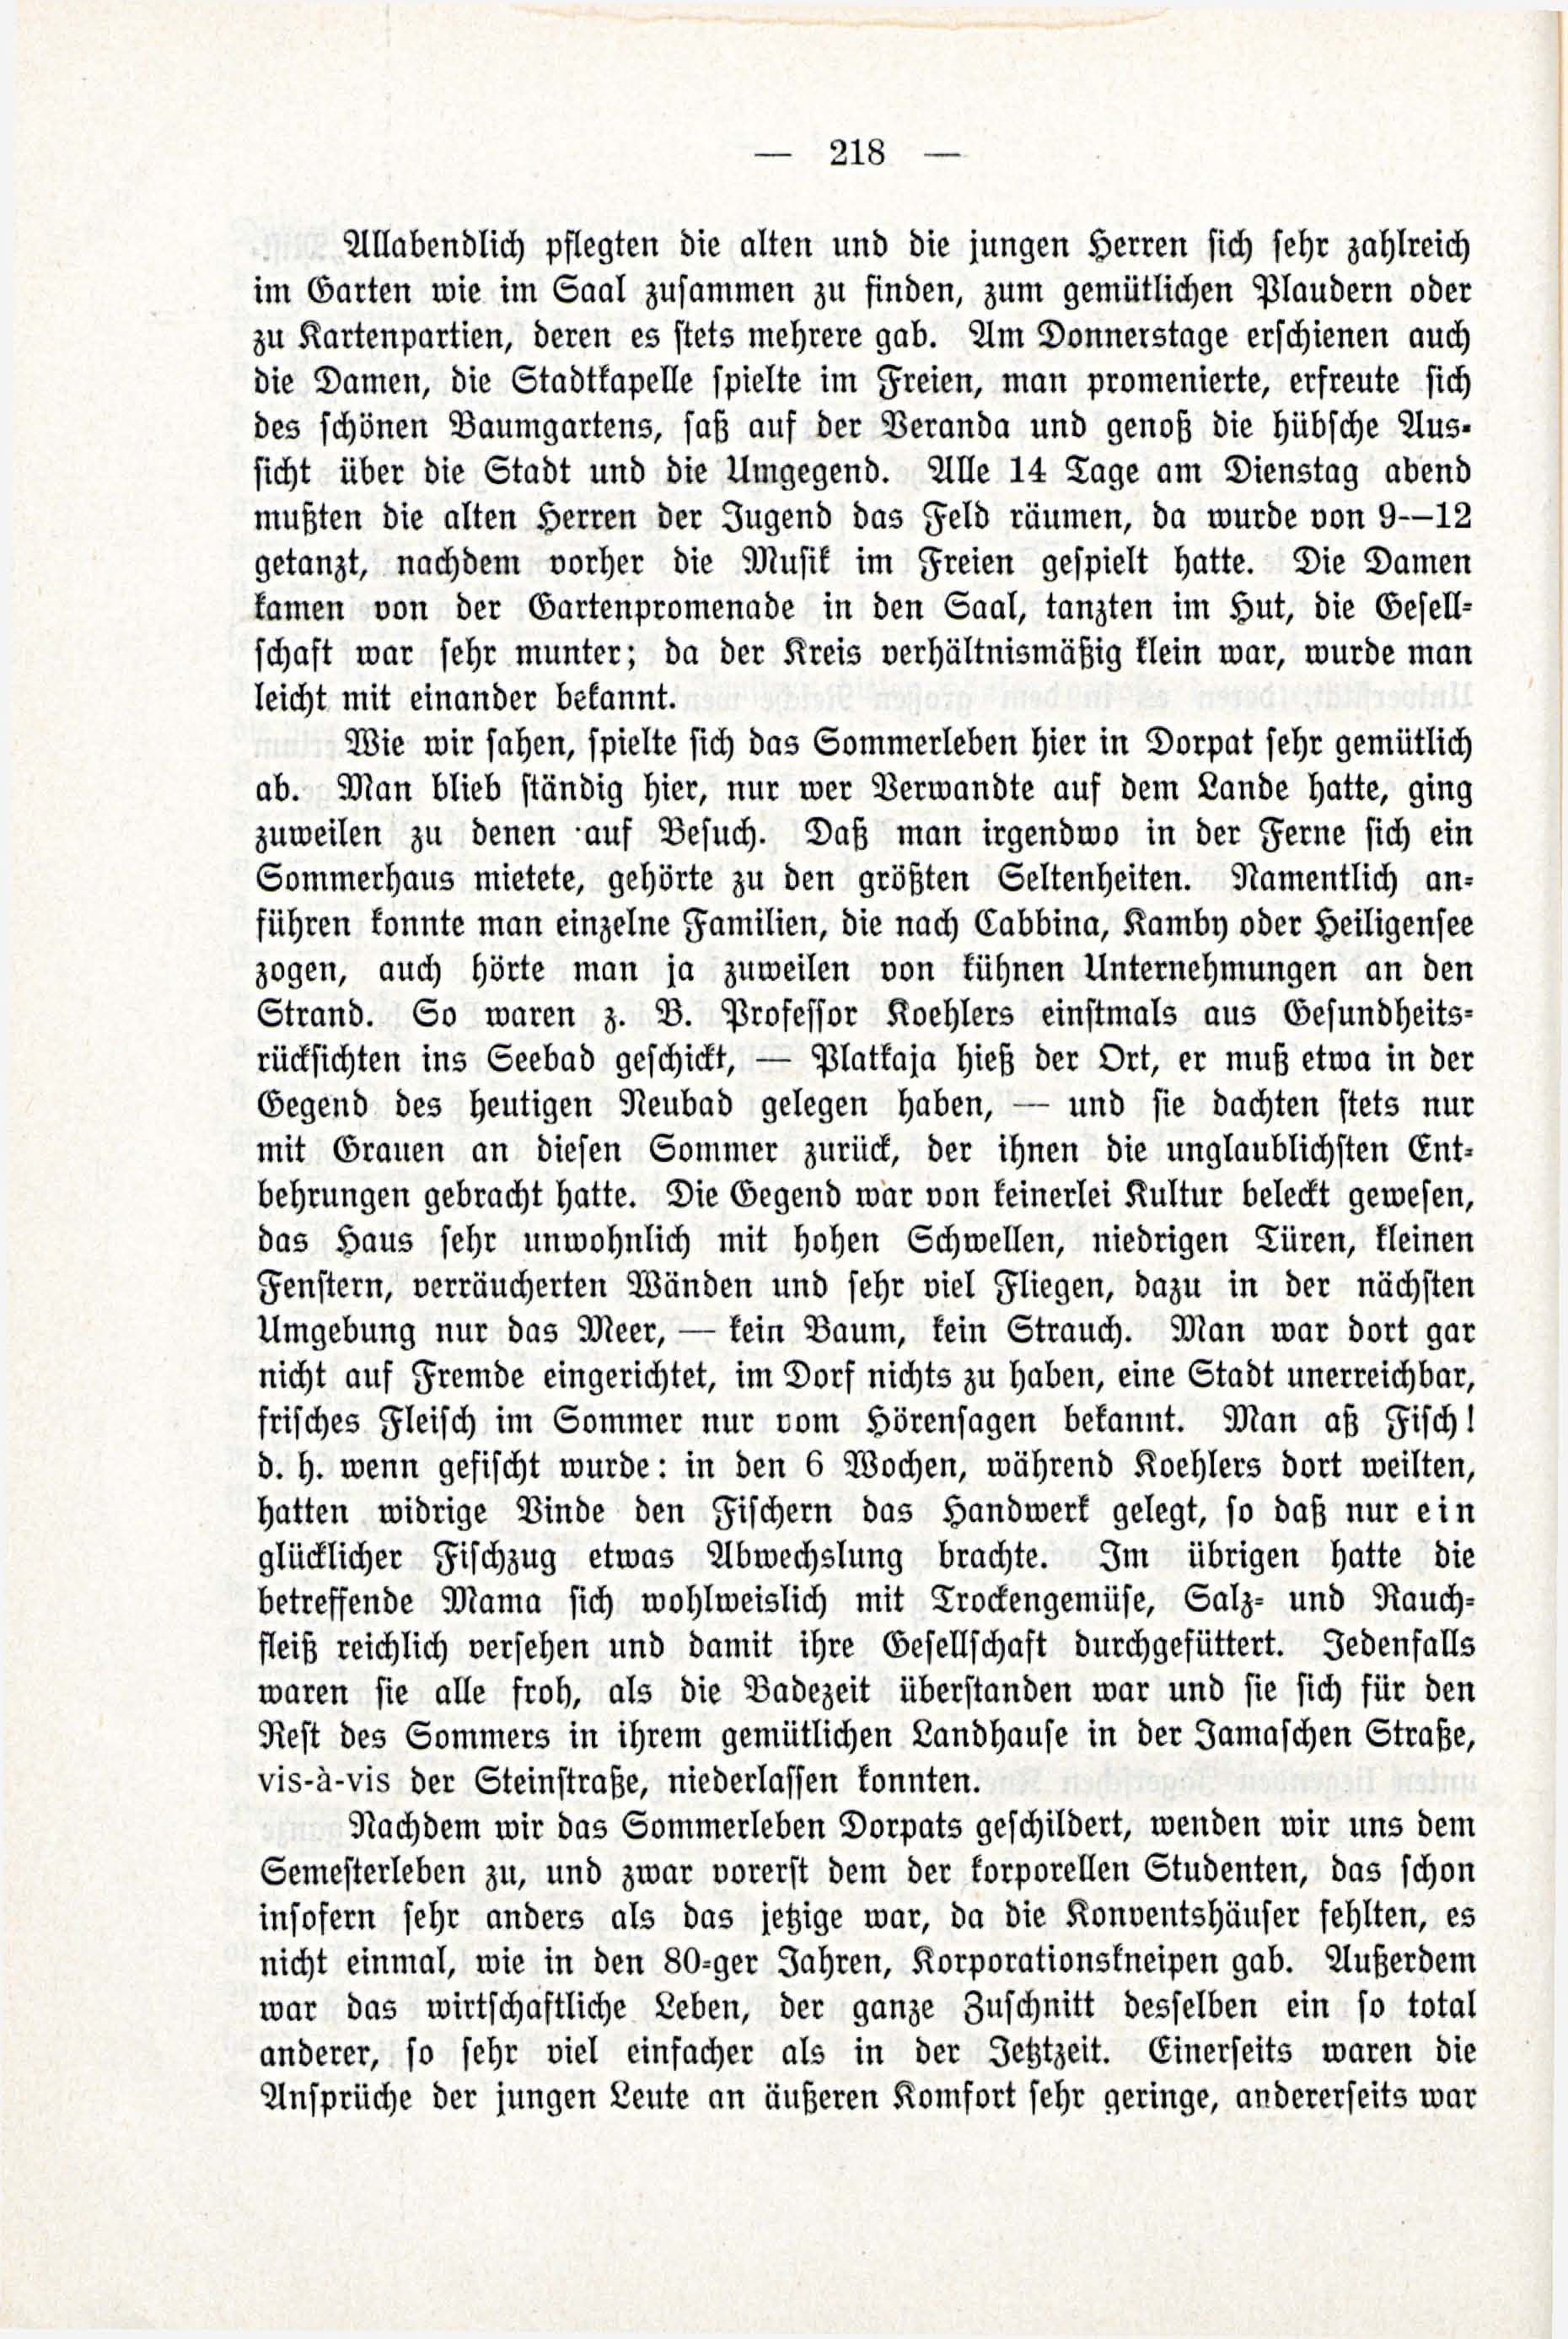 Deutsche Monatsschrift für Russland [3/03] (1914) | 64. (218) Haupttext